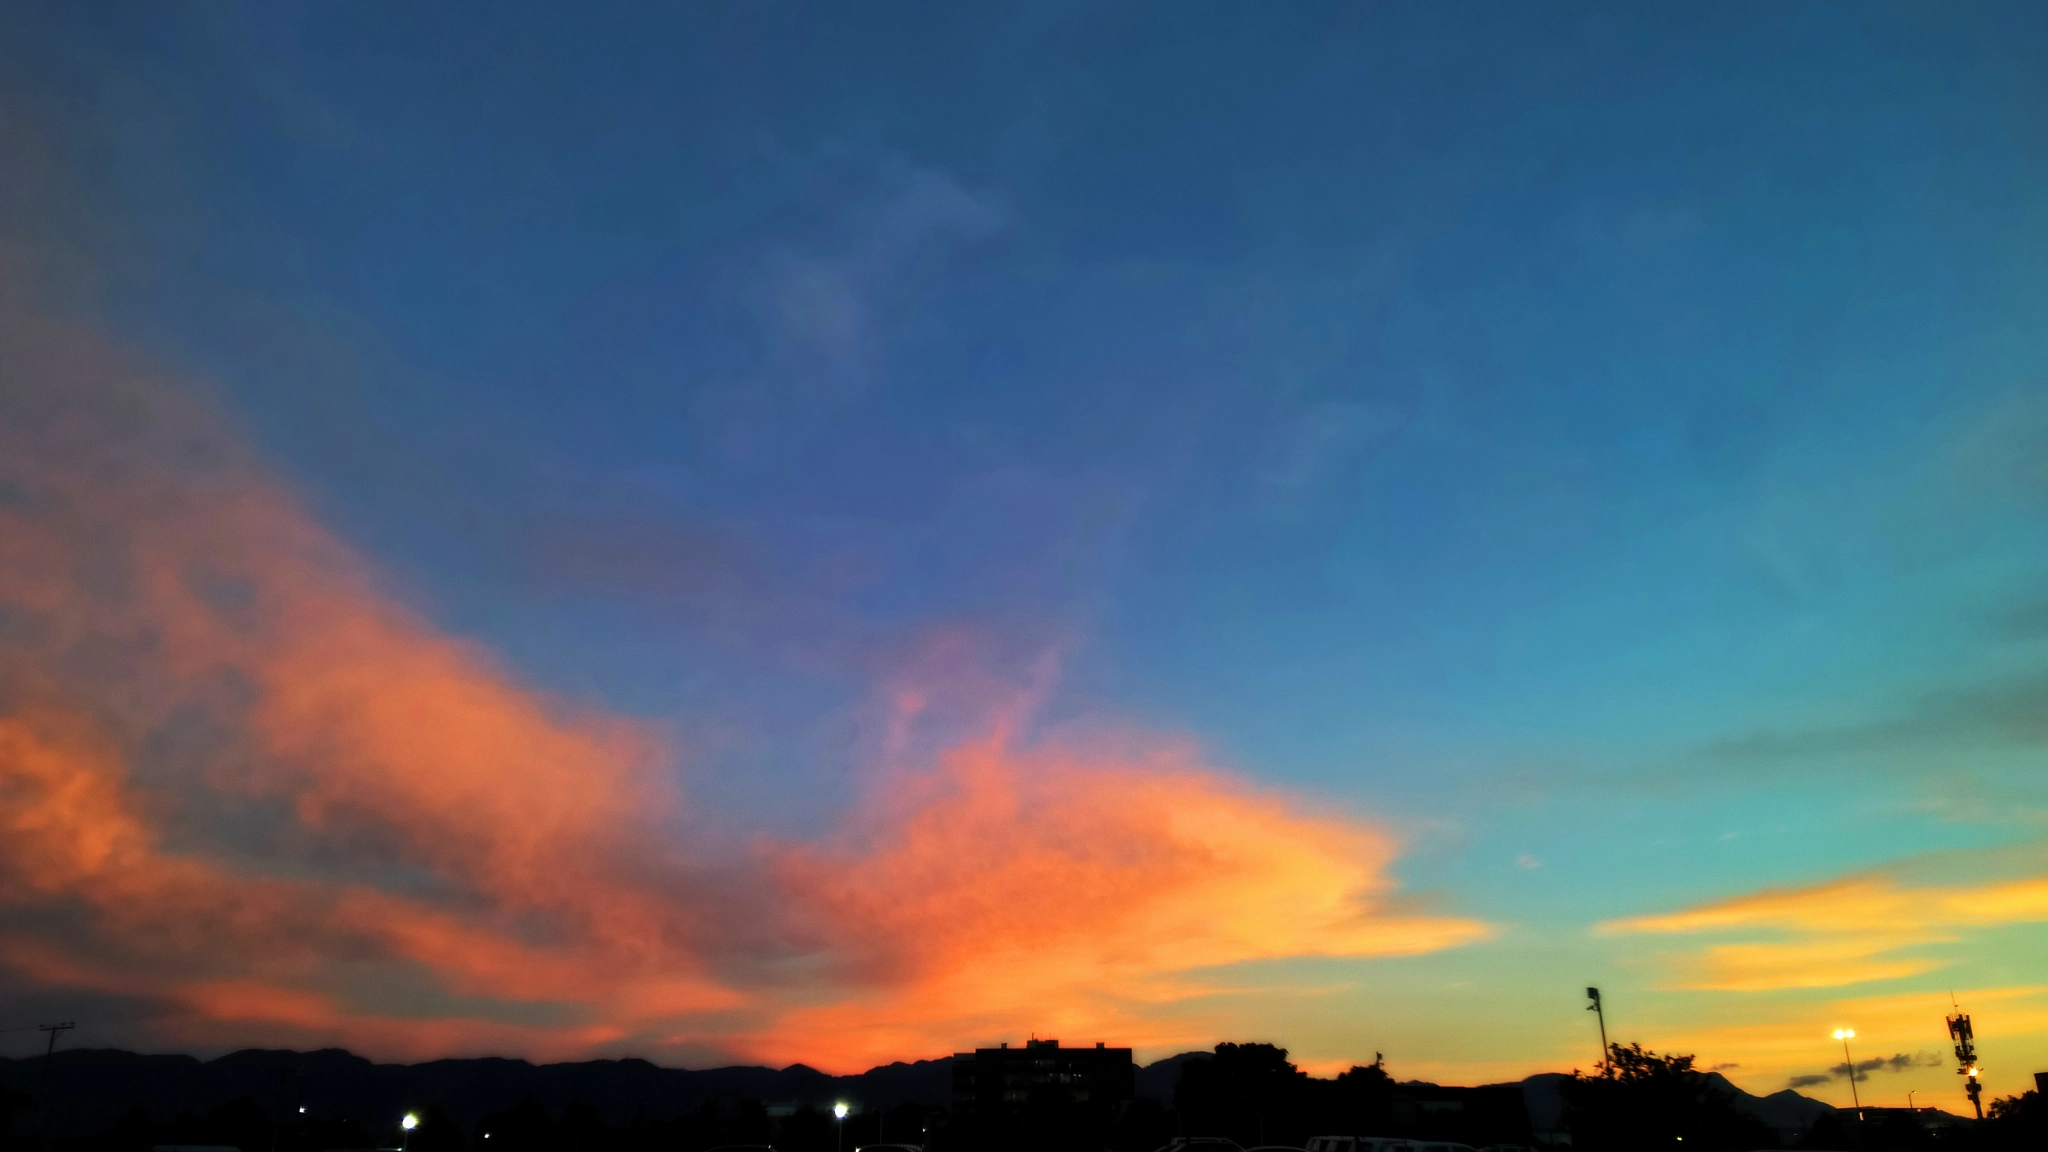 Nokia Lumia 929 sample photo. Sunset - twilight, bogotá. photography